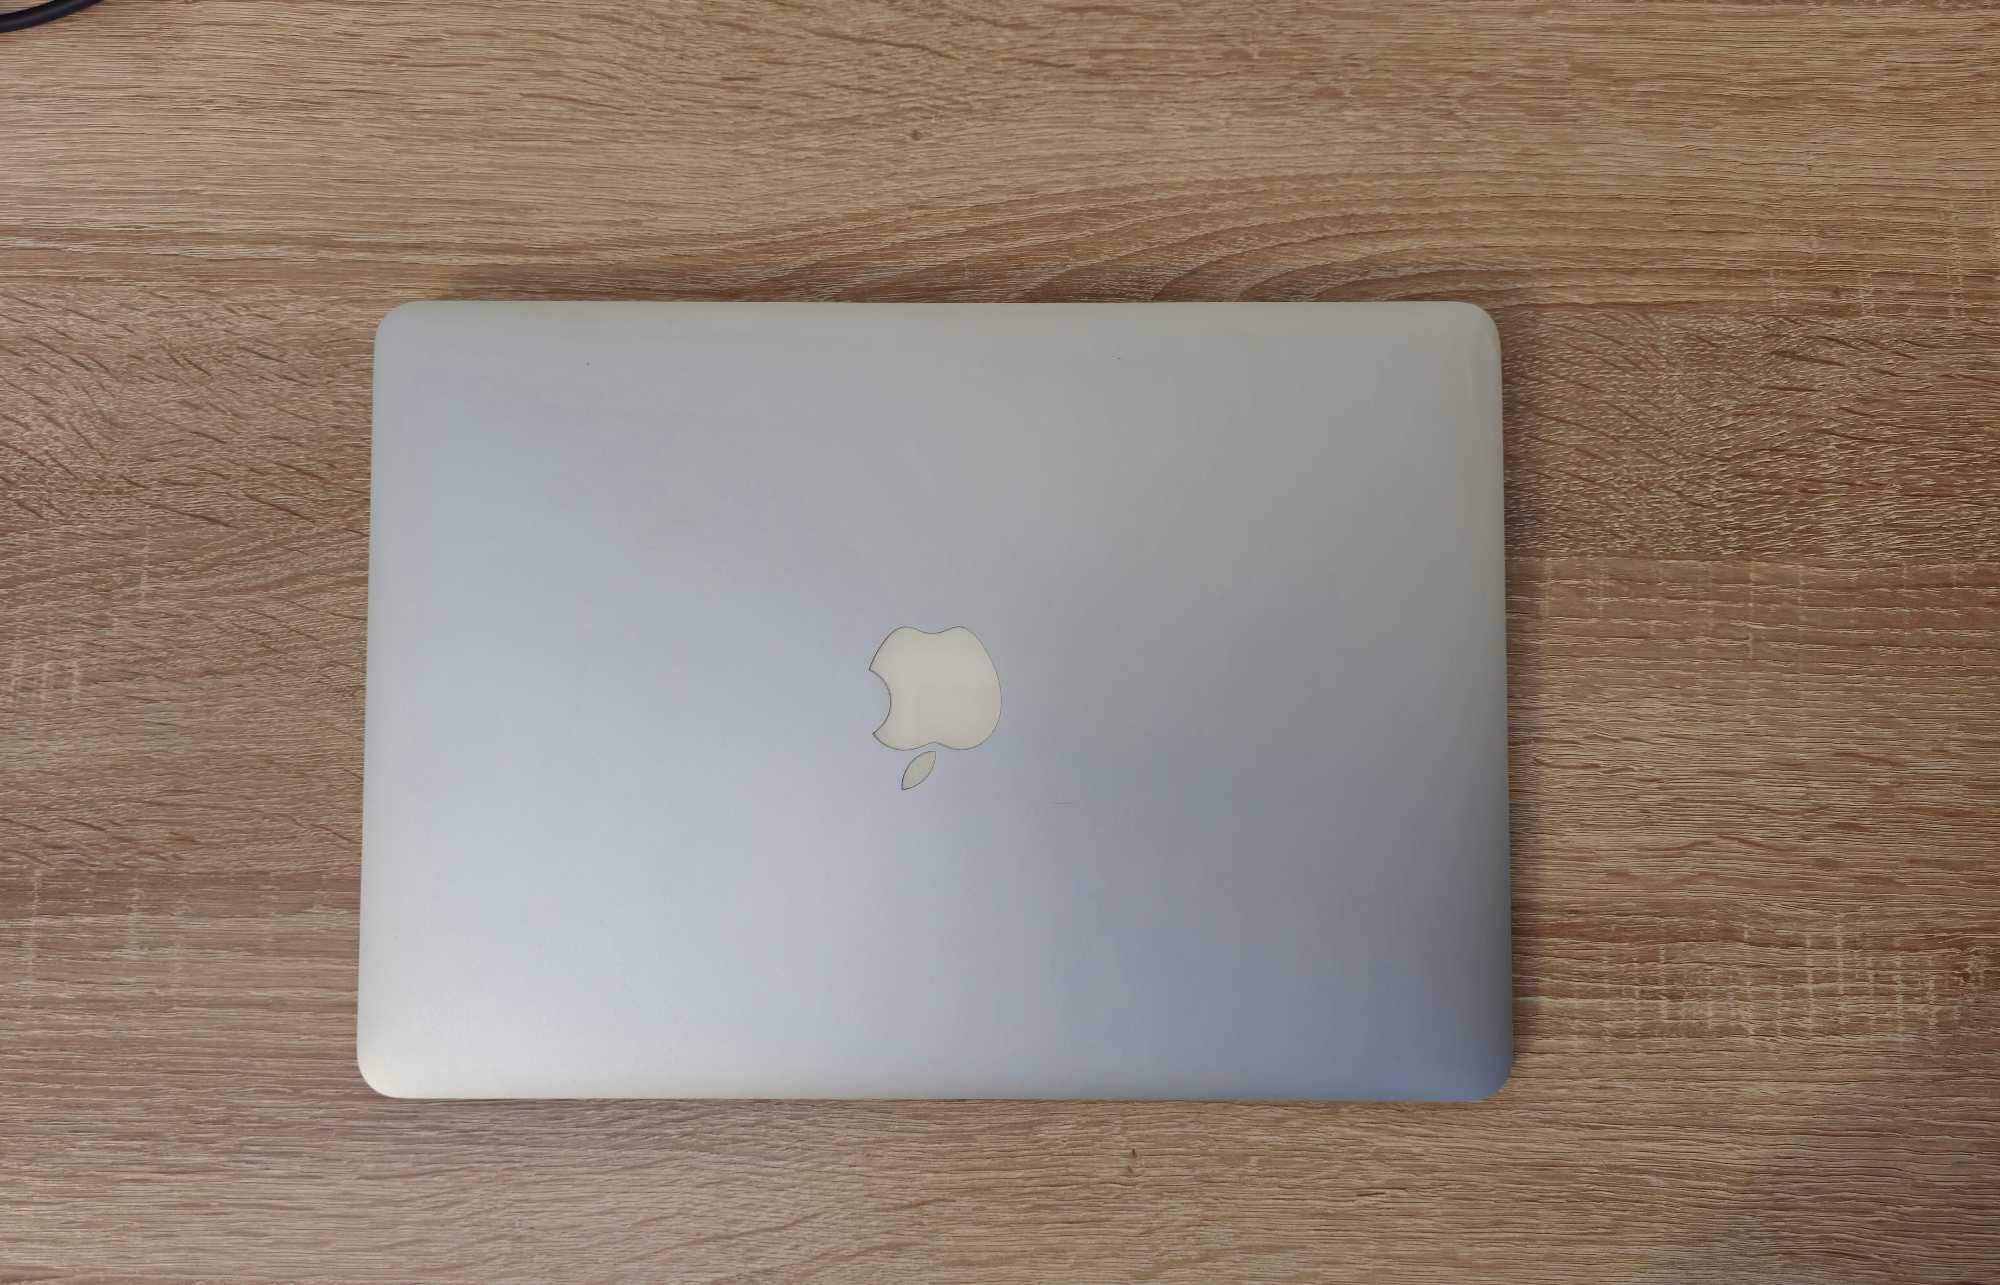 MacBook Air 13,3 серый (2012)